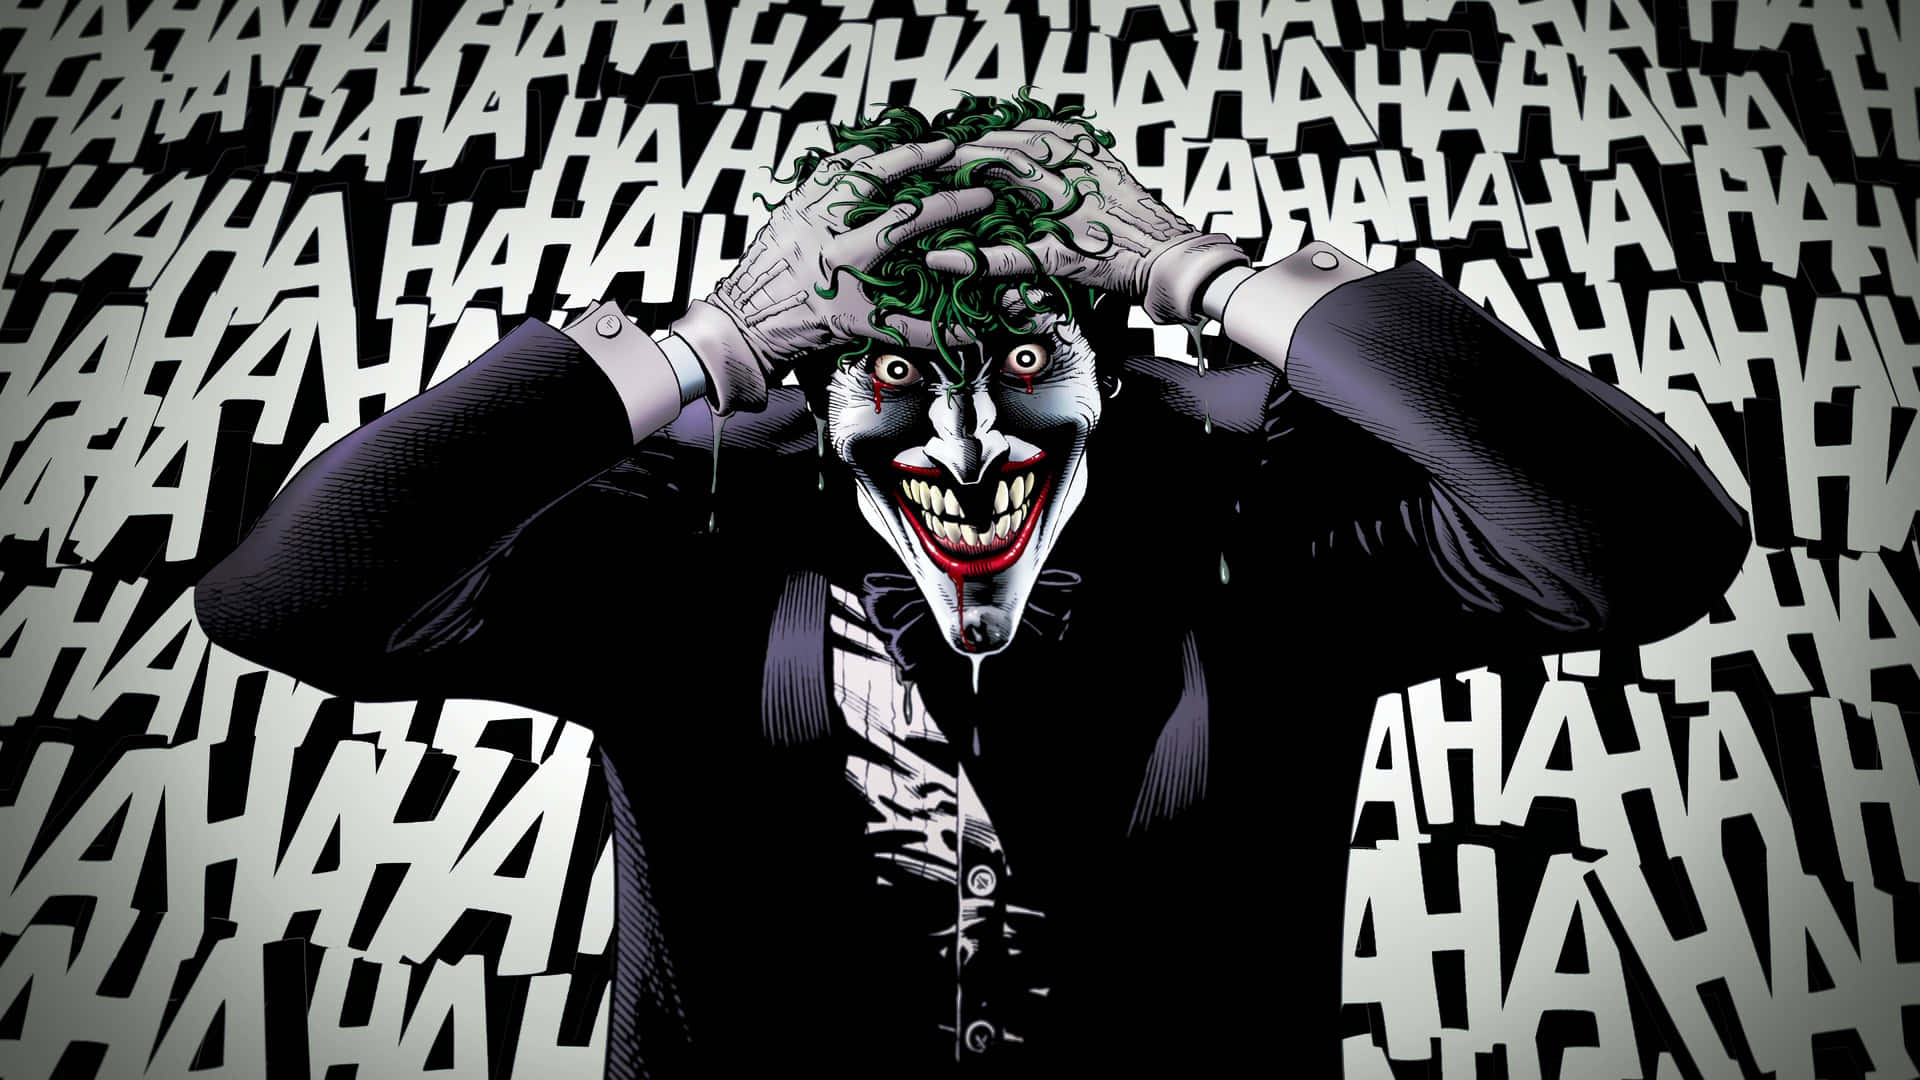 The Sinister Laugh of the Joker Wallpaper